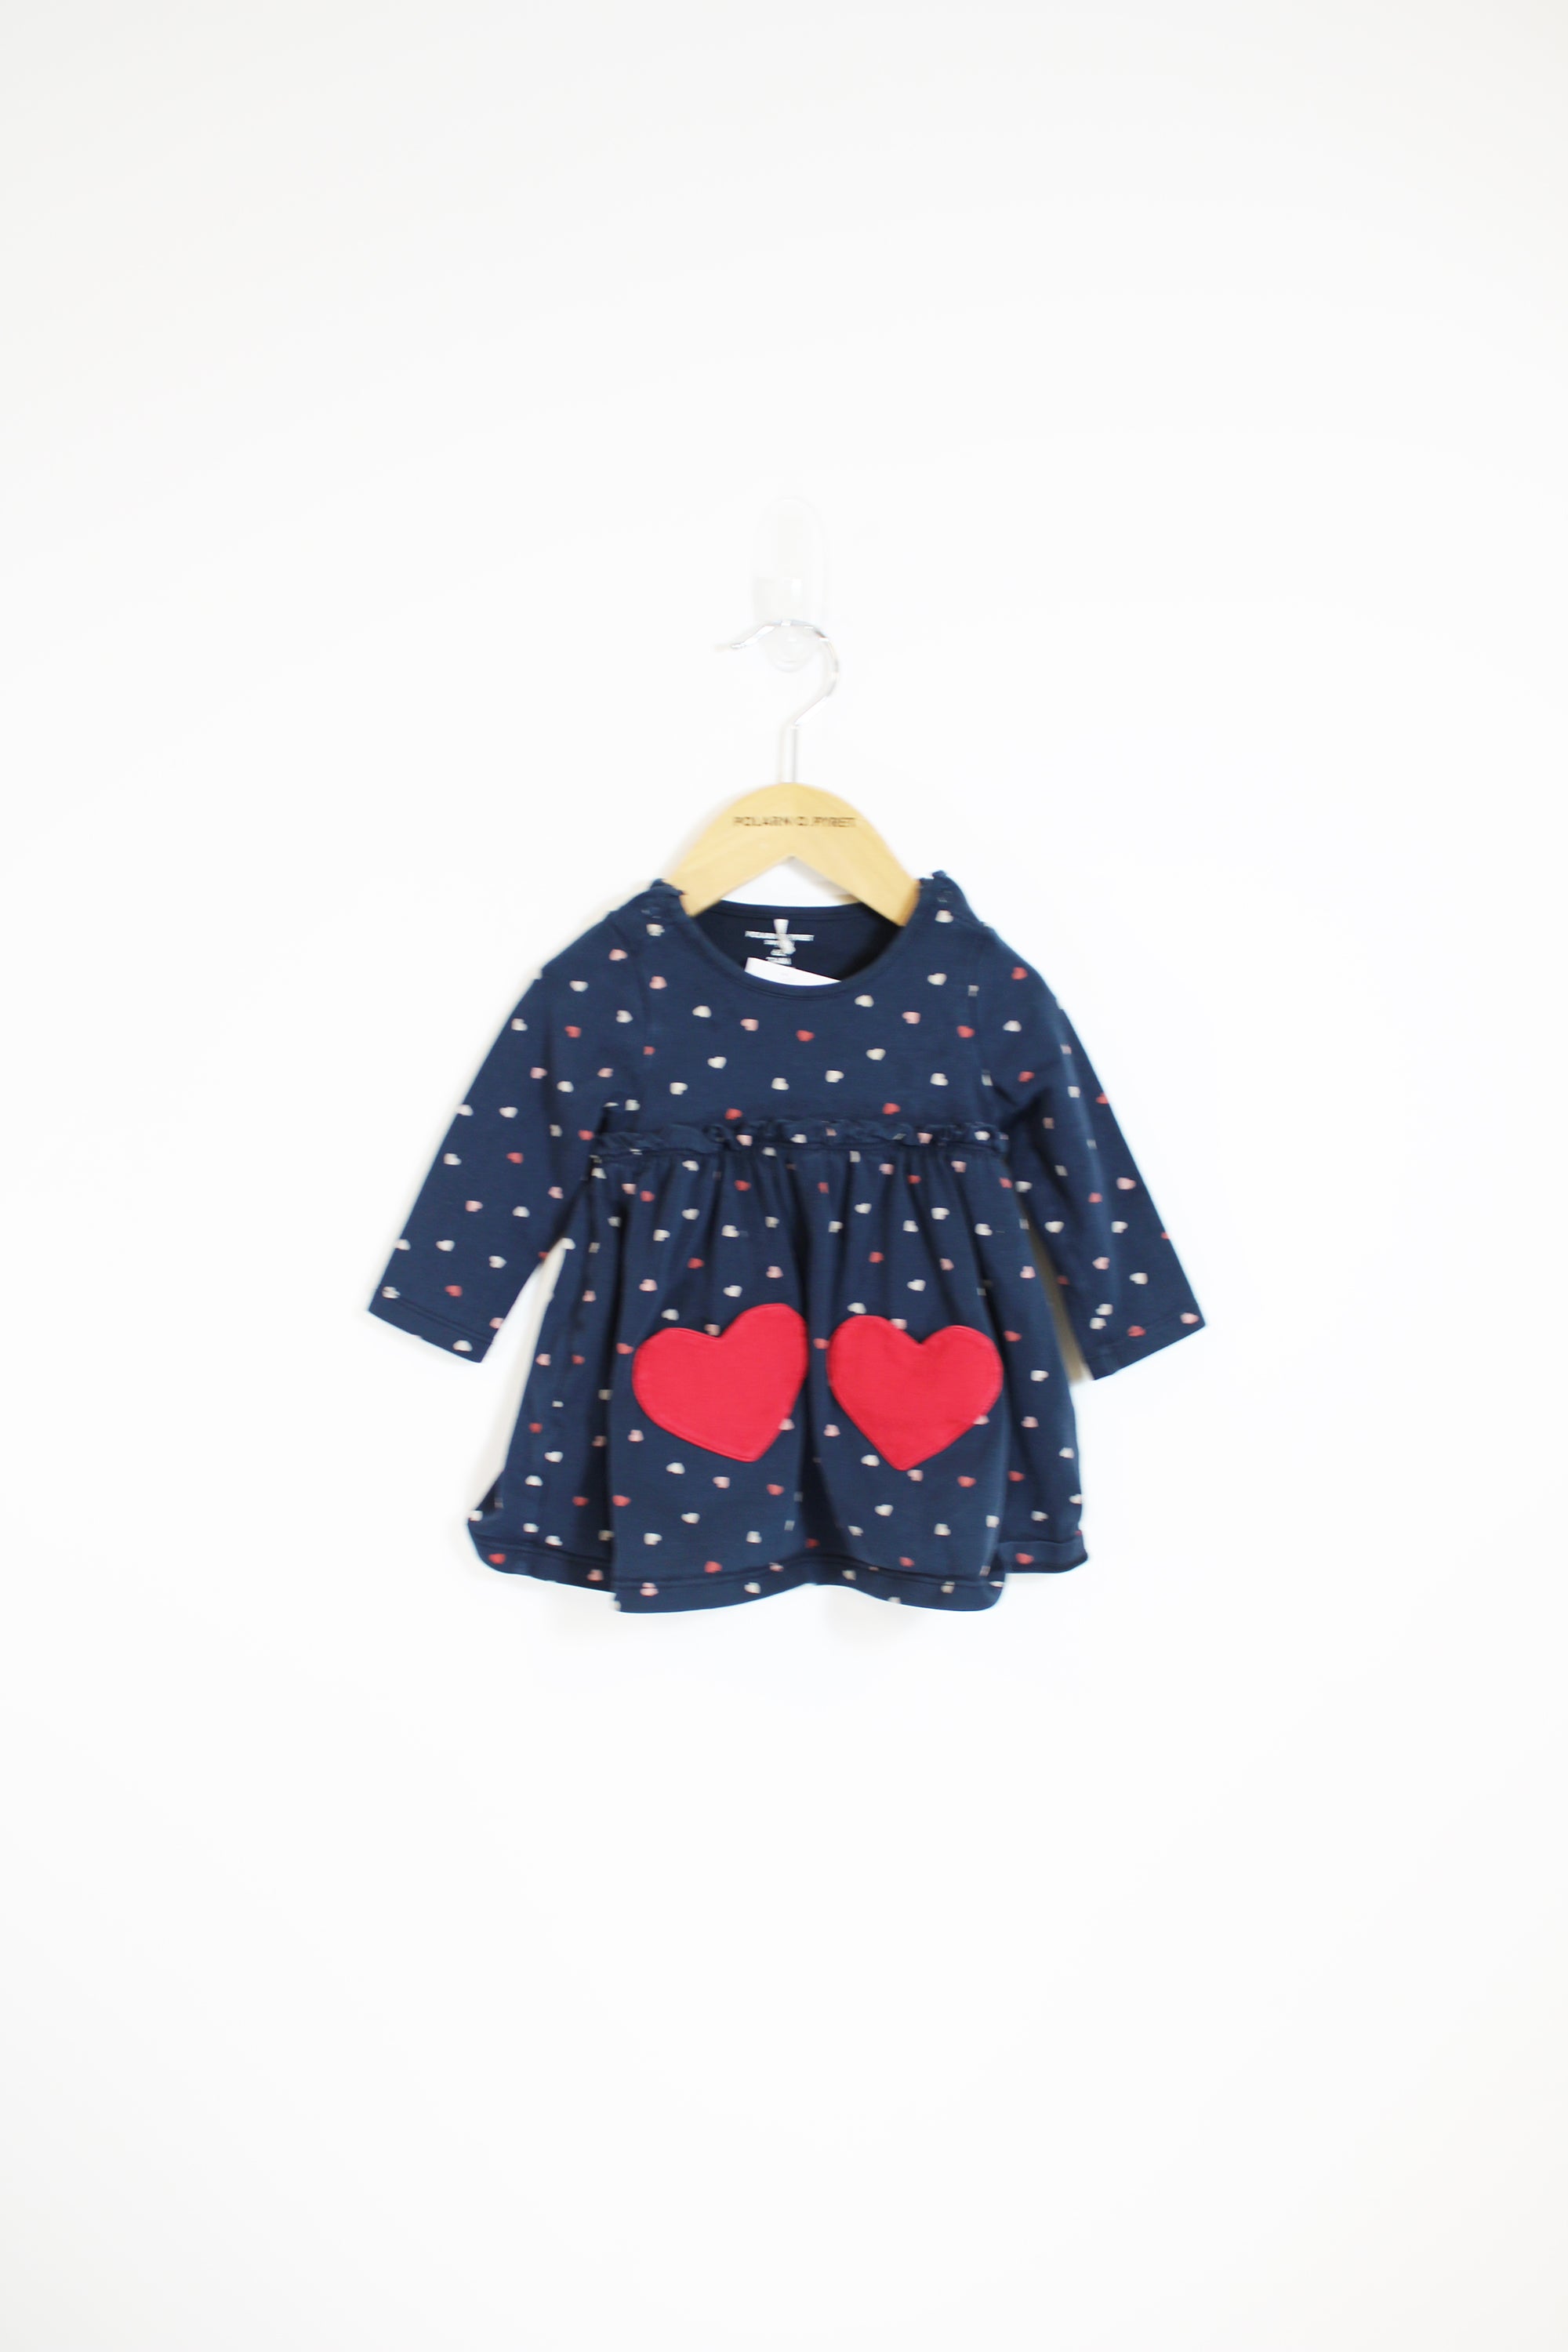 Heart Pockets Baby Dress